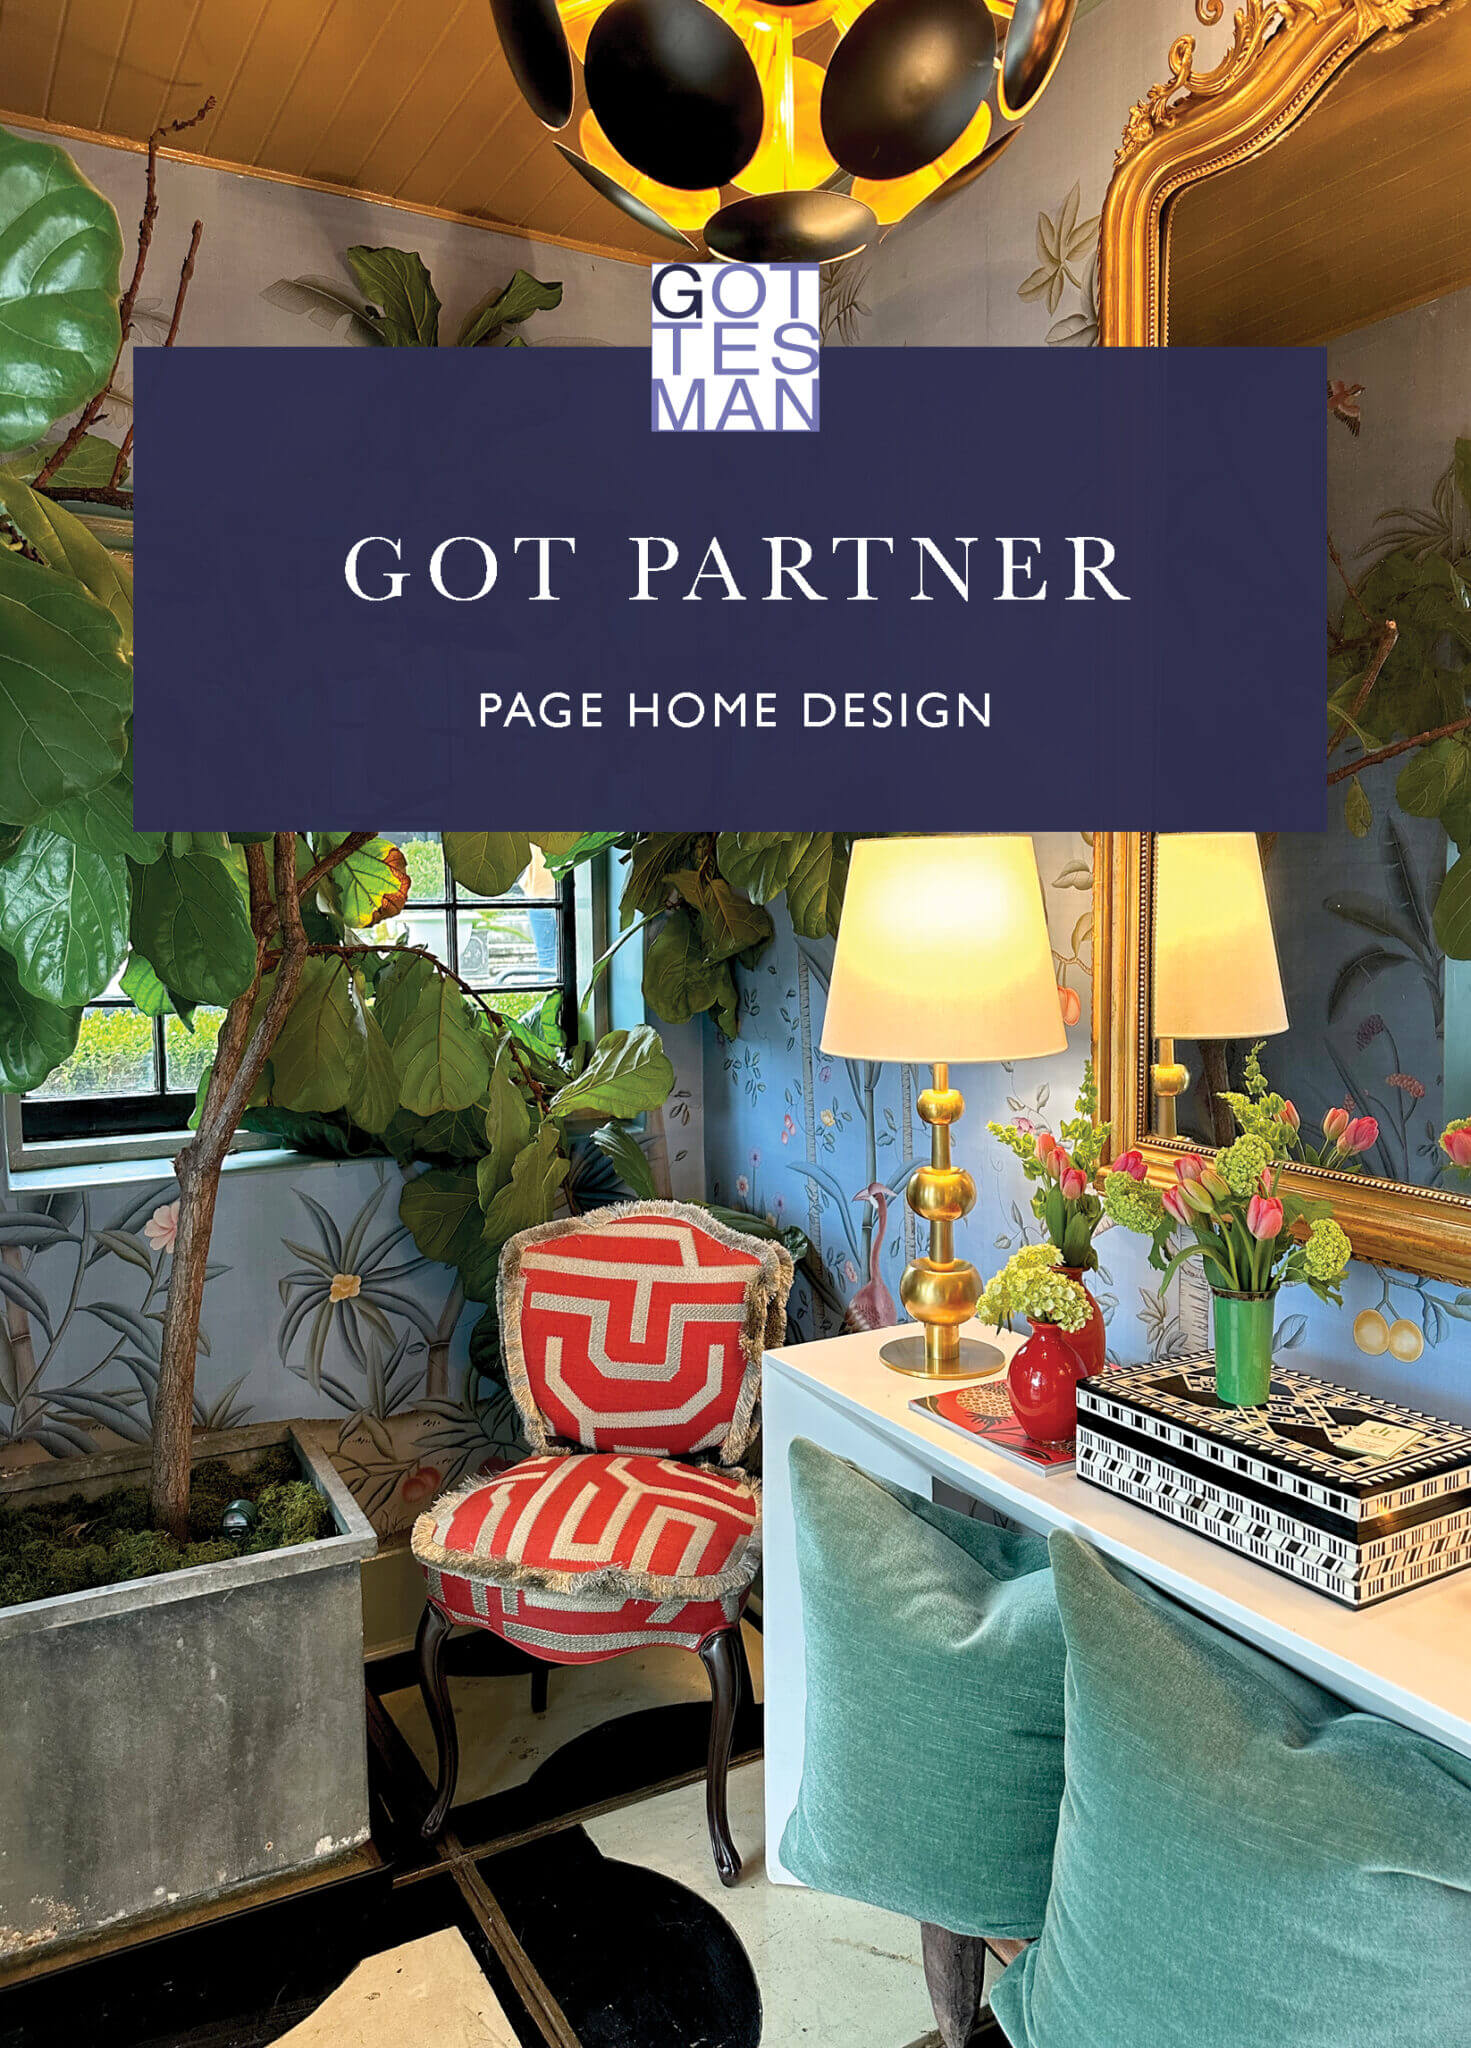 "Got Partner: Page Home Design"